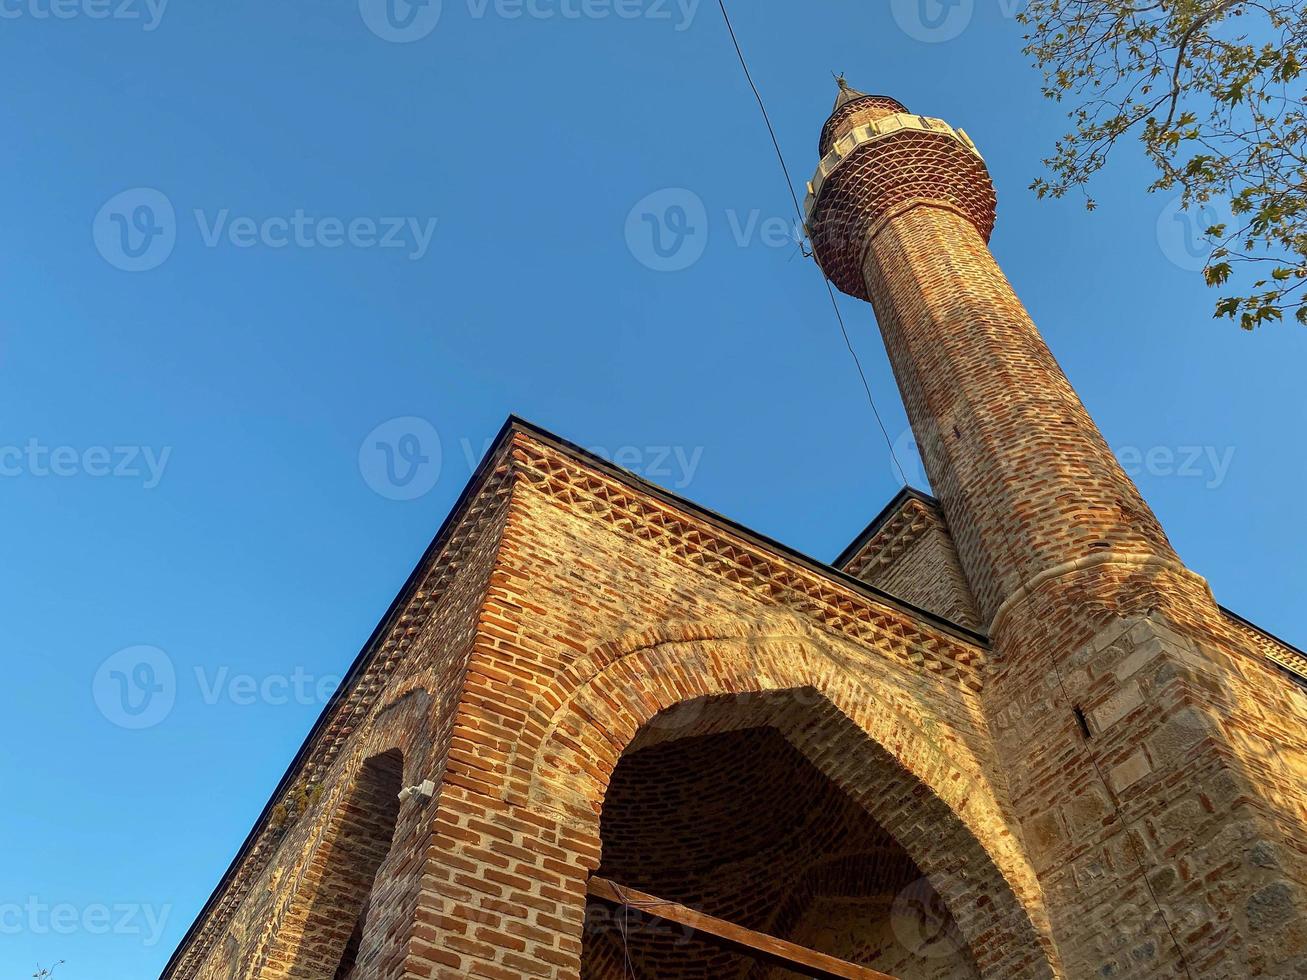 la mosquée islamique est une grande mosquée musulmane pour les prières, un ancien bâtiment en briques anciennes avec une haute tour dans une station balnéaire du sud du pays tropical chaud et touristique photo